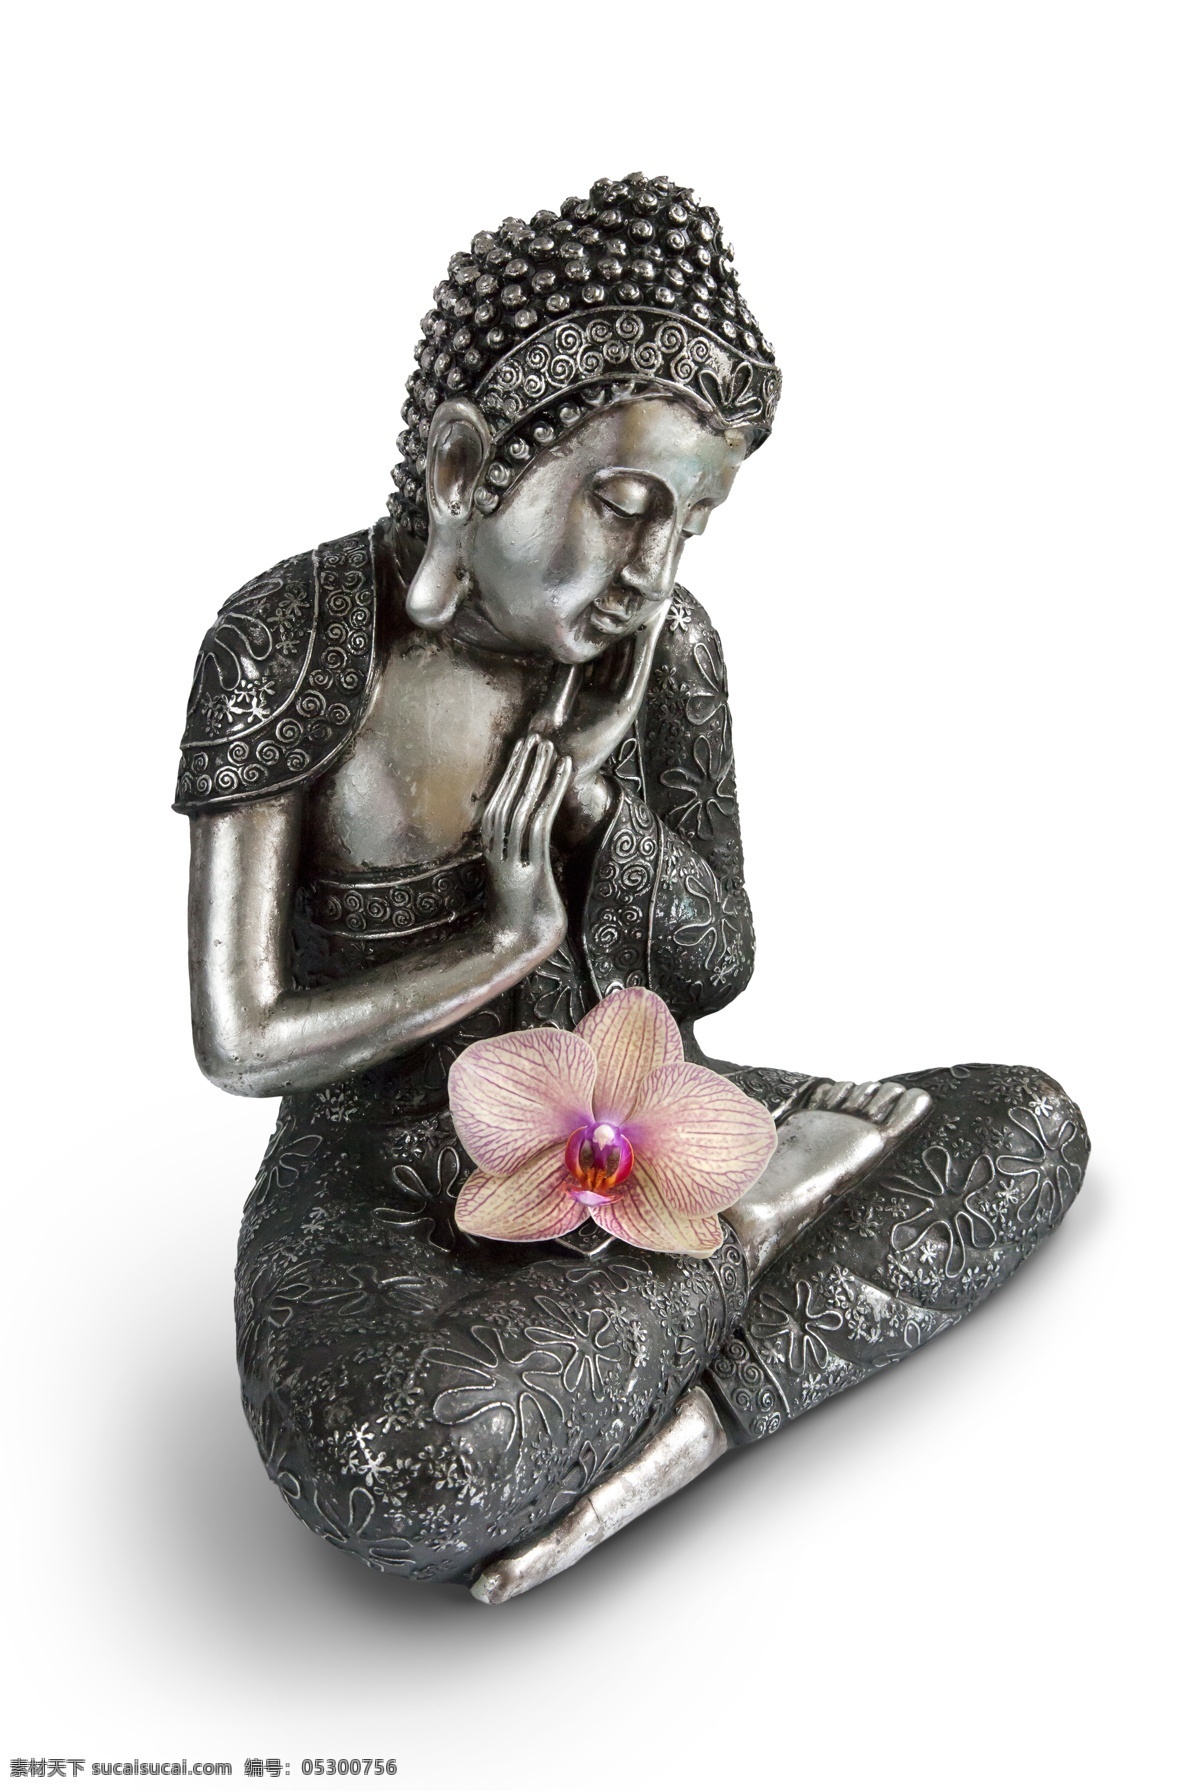 佛像 花朵 菩萨 雕塑 神像 鲜花 传统工艺 文化艺术